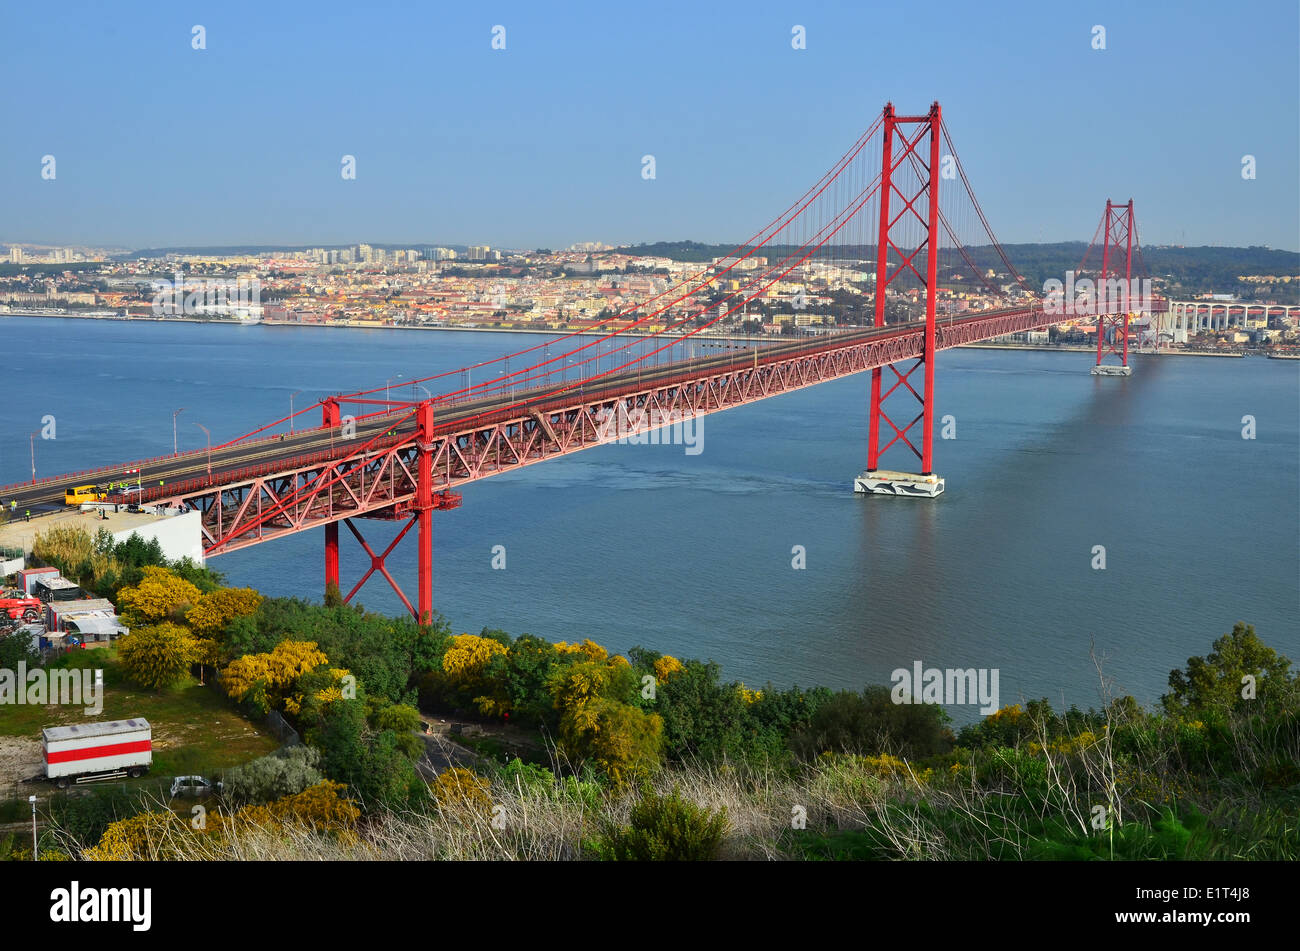 Le Pont 25 de Abril est un pont suspendu reliant la ville de Lisbonne à la municipalité d'Almada, sur la rivière Tejo Banque D'Images